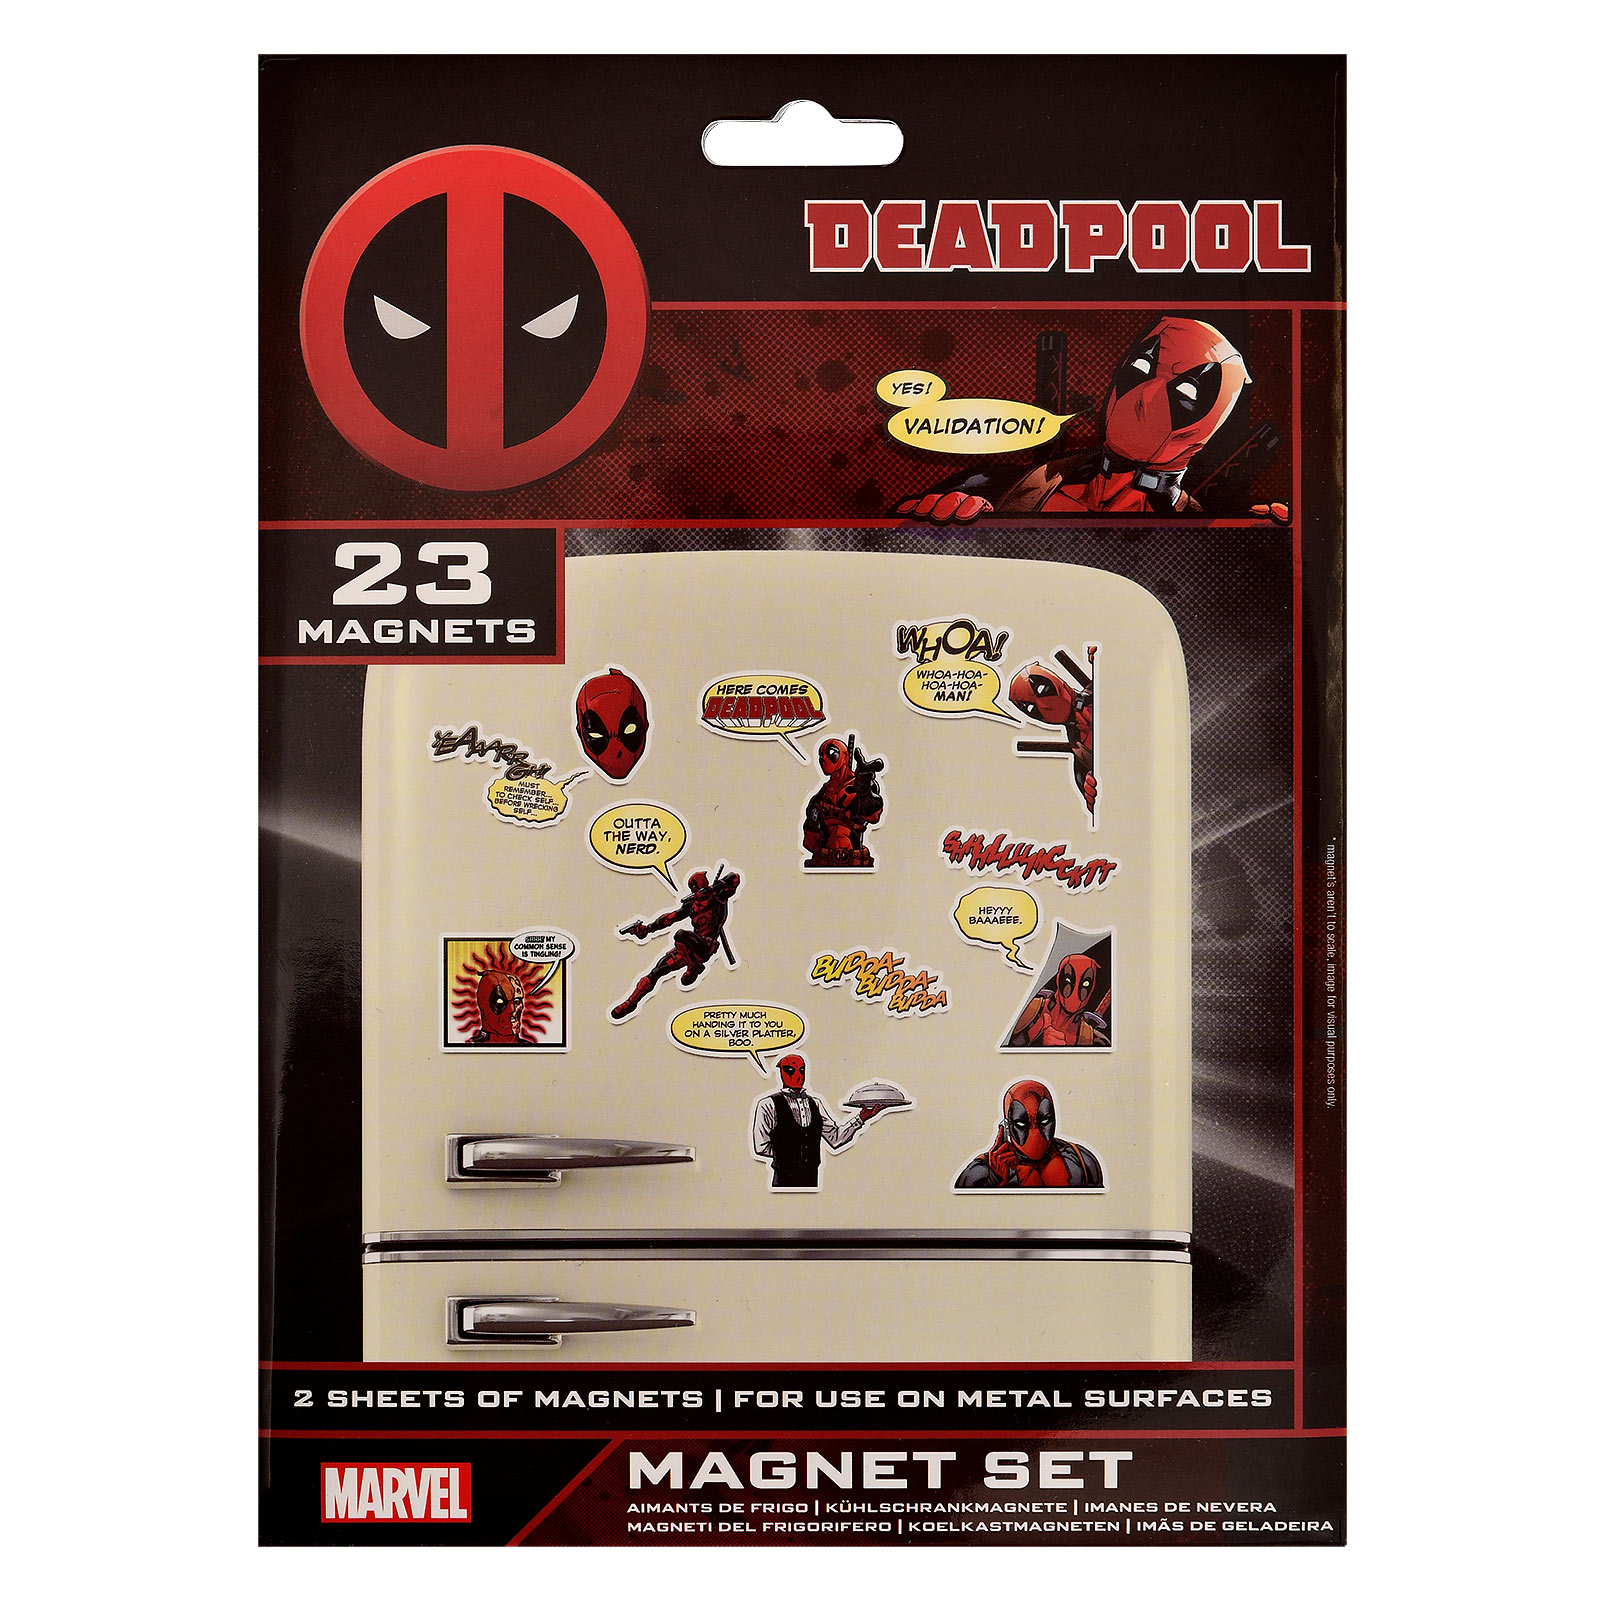 Deadpool - Set de Magnets de Bande Dessinée